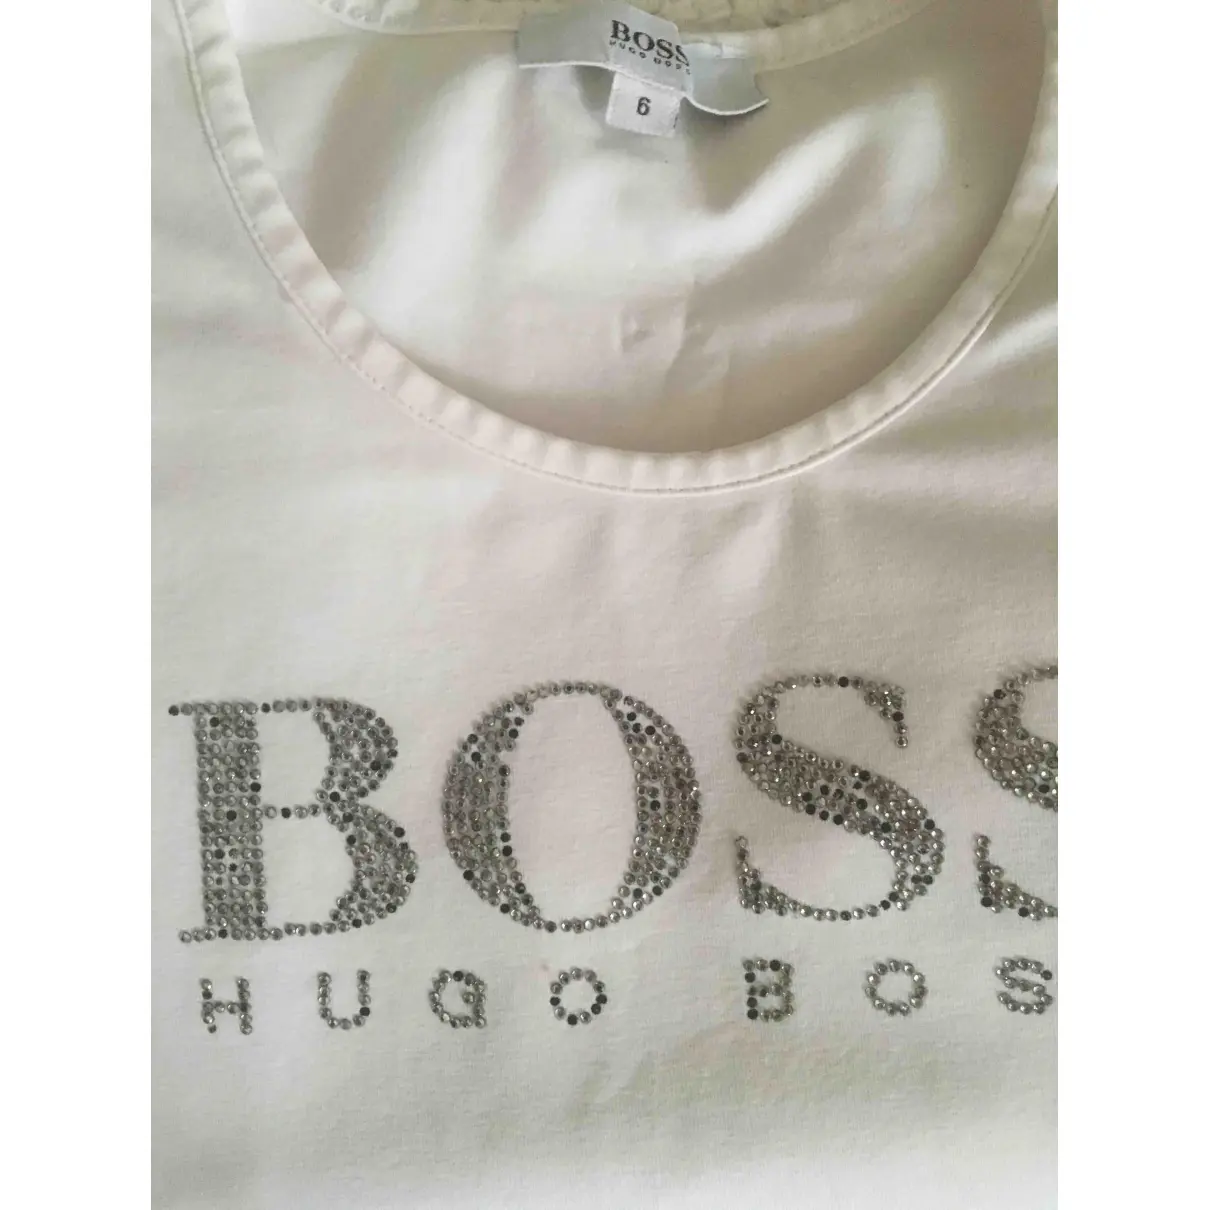 Buy Boss T-shirt online